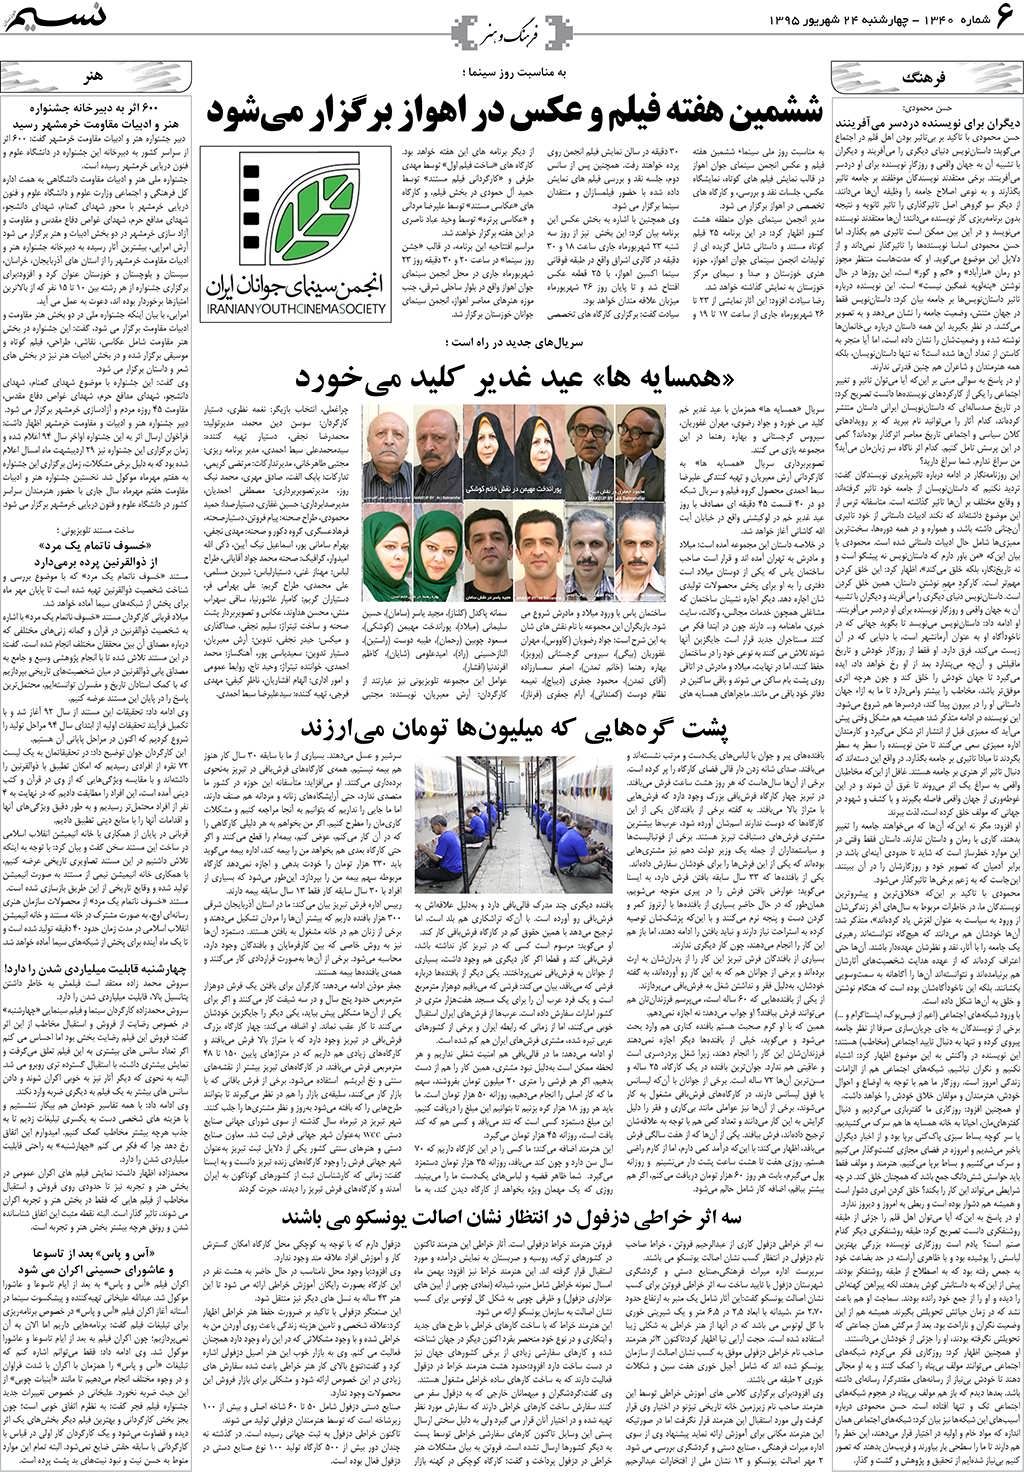 صفحه فرهنگ و هنر روزنامه نسیم شماره 1340